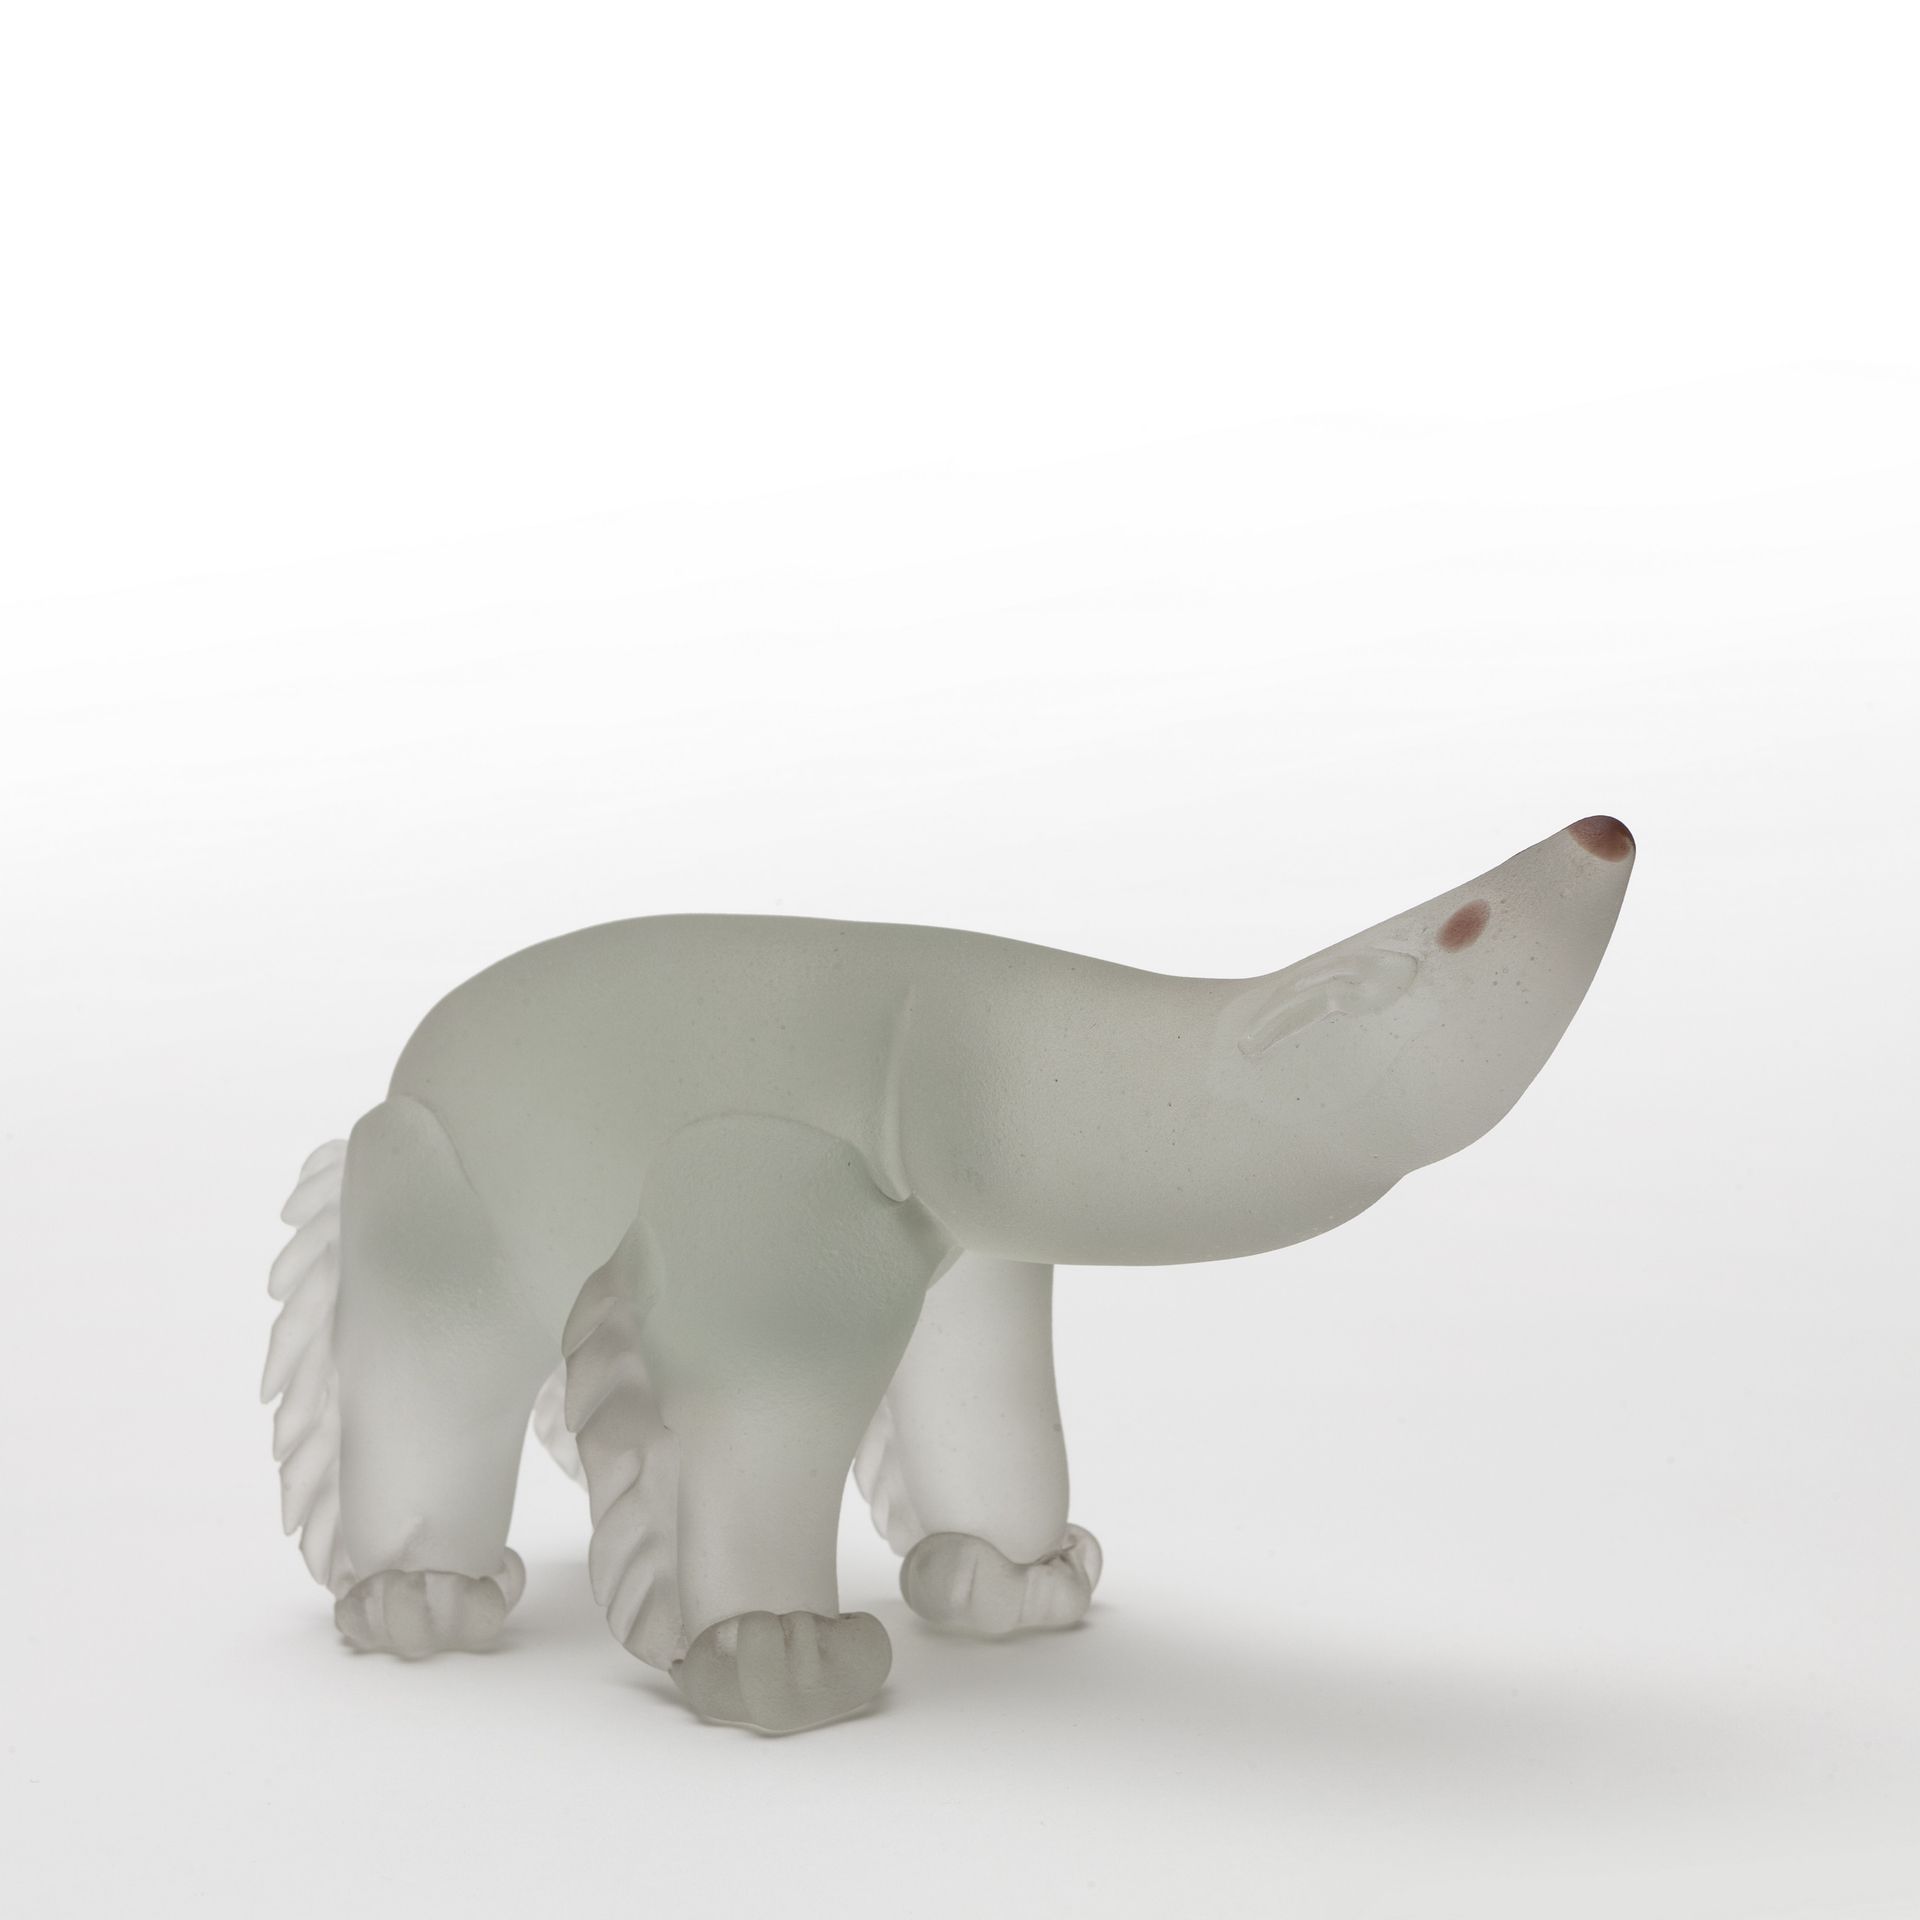 BAROVIER SEGUSO FERRO BAROVIER SEGUSO FERRO

Una figura di orso polare in vetro &hellip;